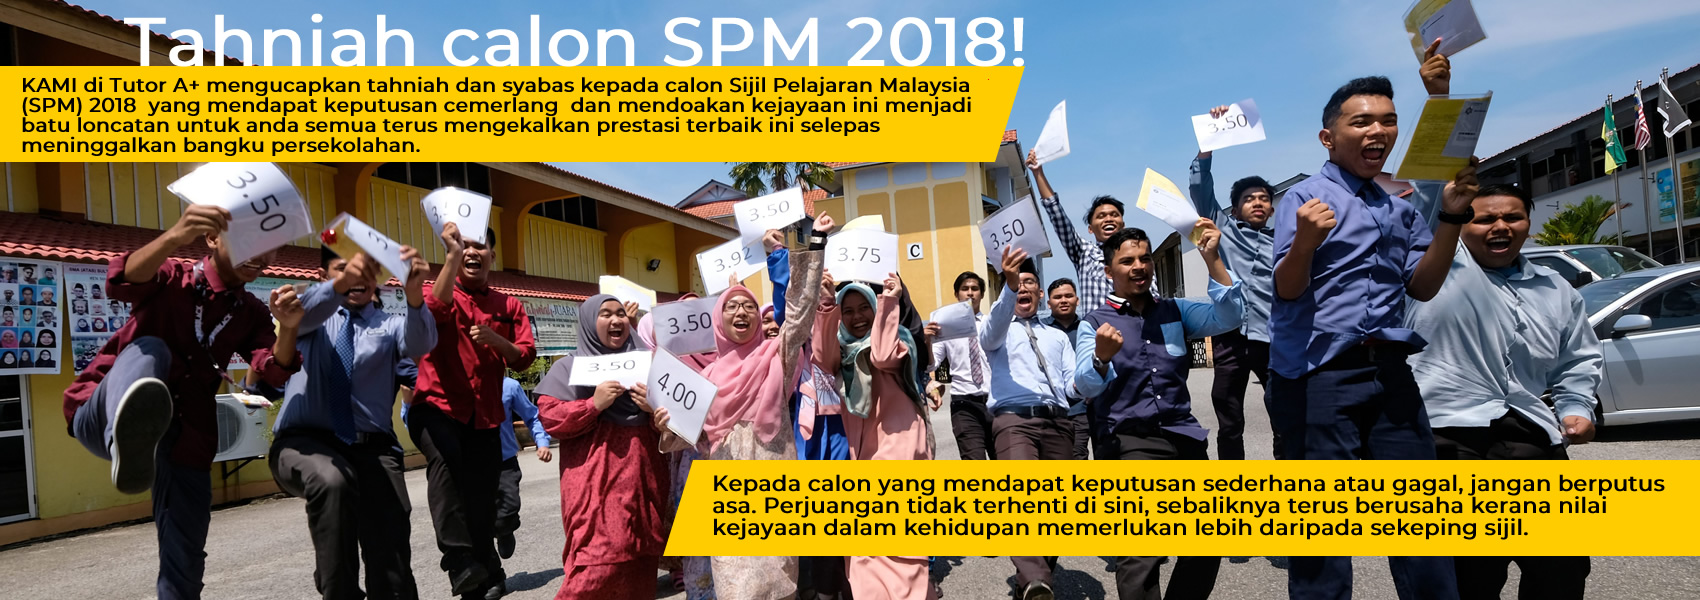 Soalan Trial Spm 2019 Negeri Sembilan - Contoh Rom